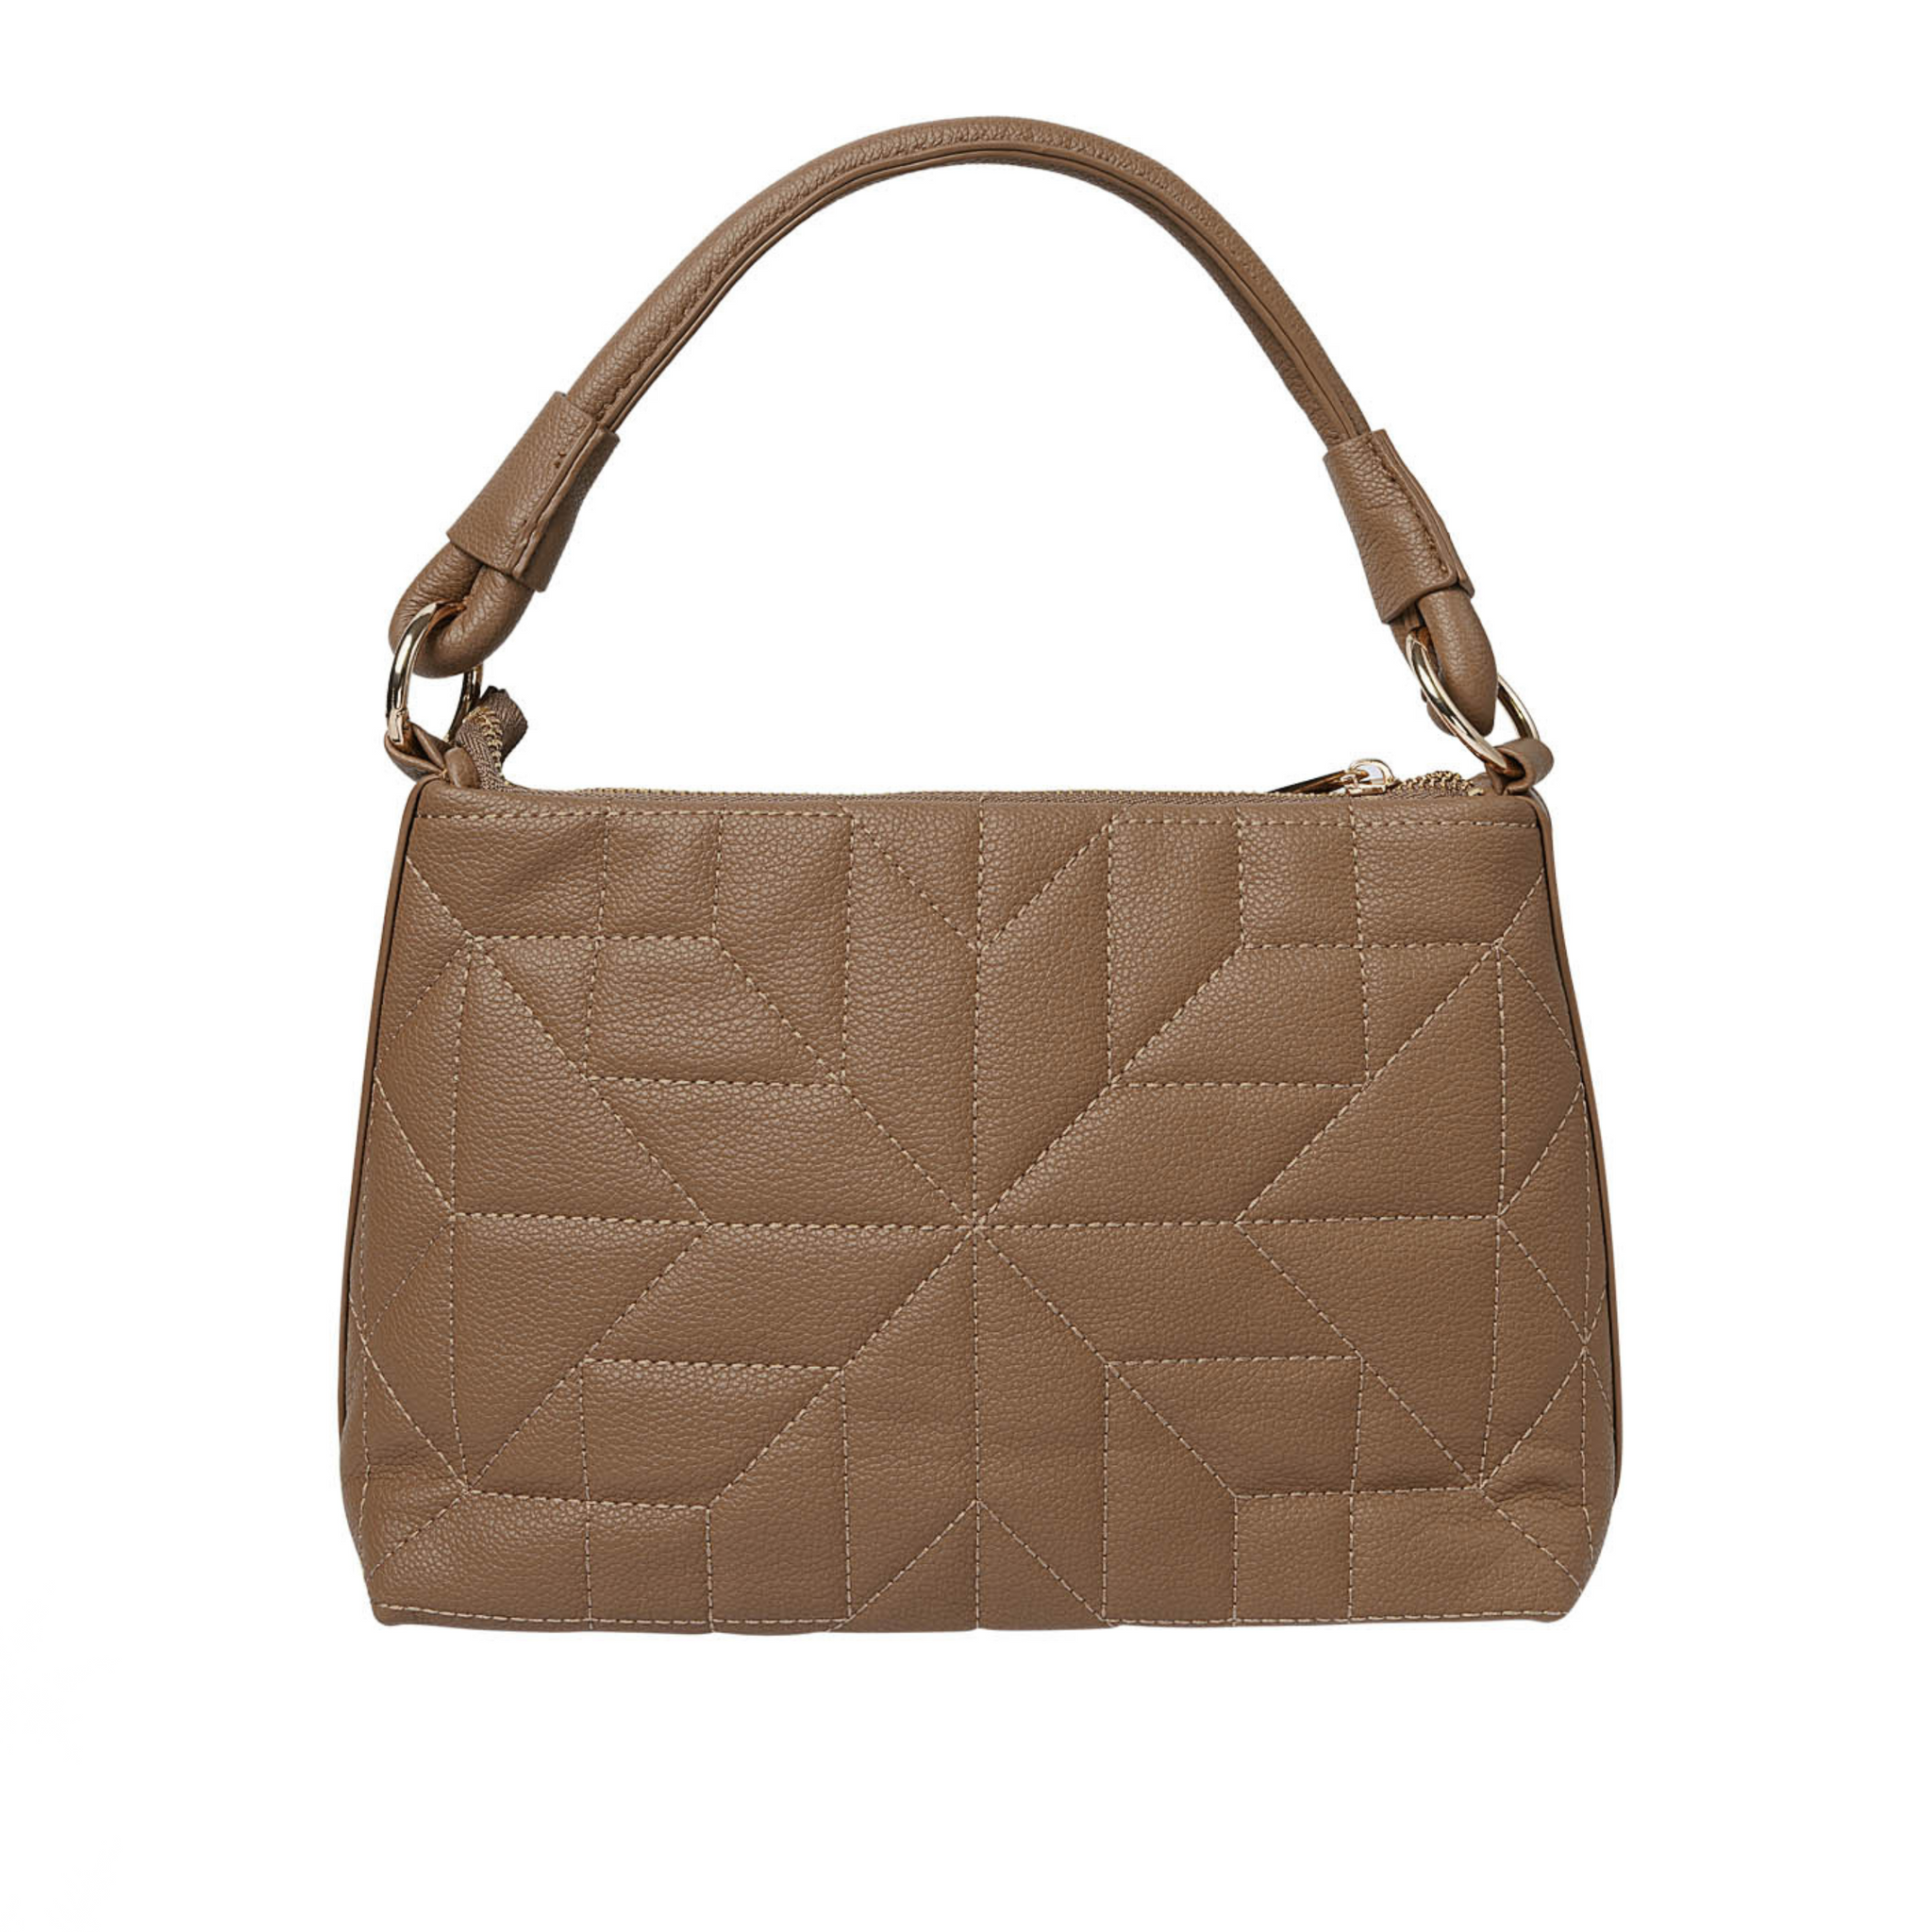 Smuk håndtaske i den flotteste brune farve!  Håndtasken har guld spænder og lås, for et ekstra unikt touch.  Tasken måler 6 x 18 x 28 centimeter.